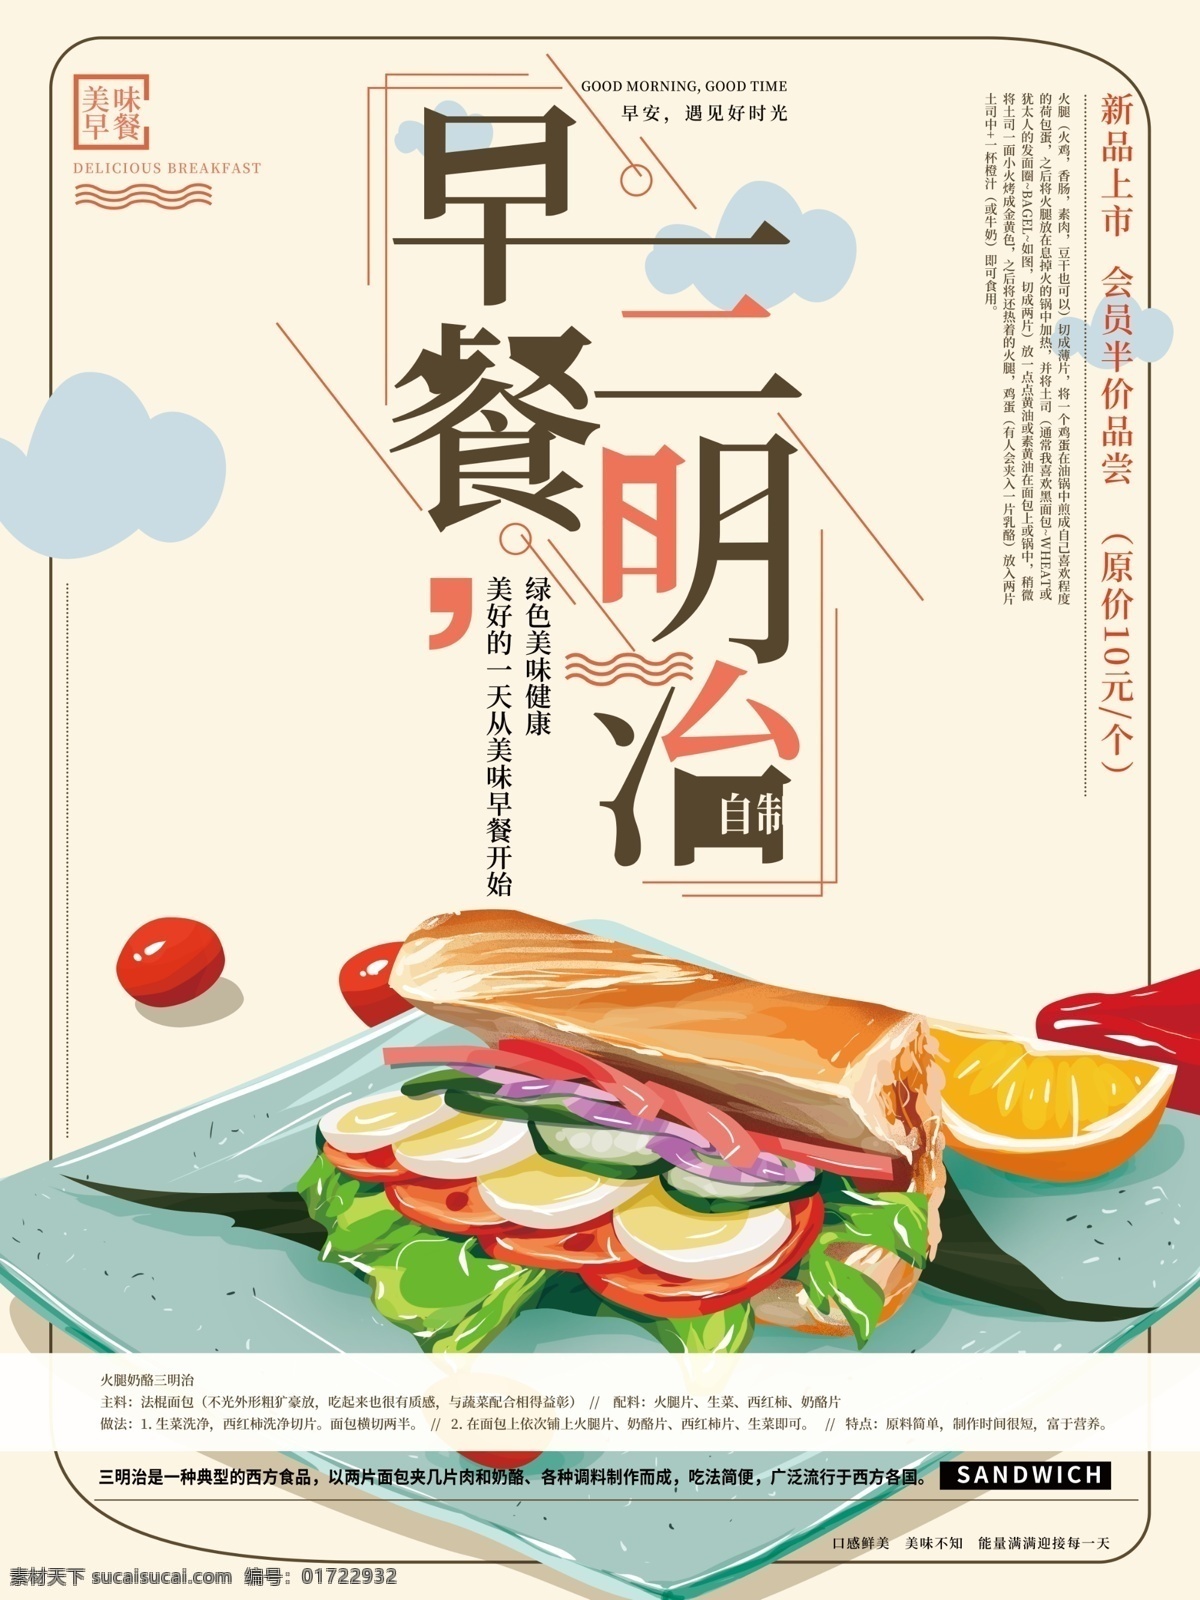 原创 手绘 早餐 三明治 海报 美食 简约 温馨 商业 促销 商业海报